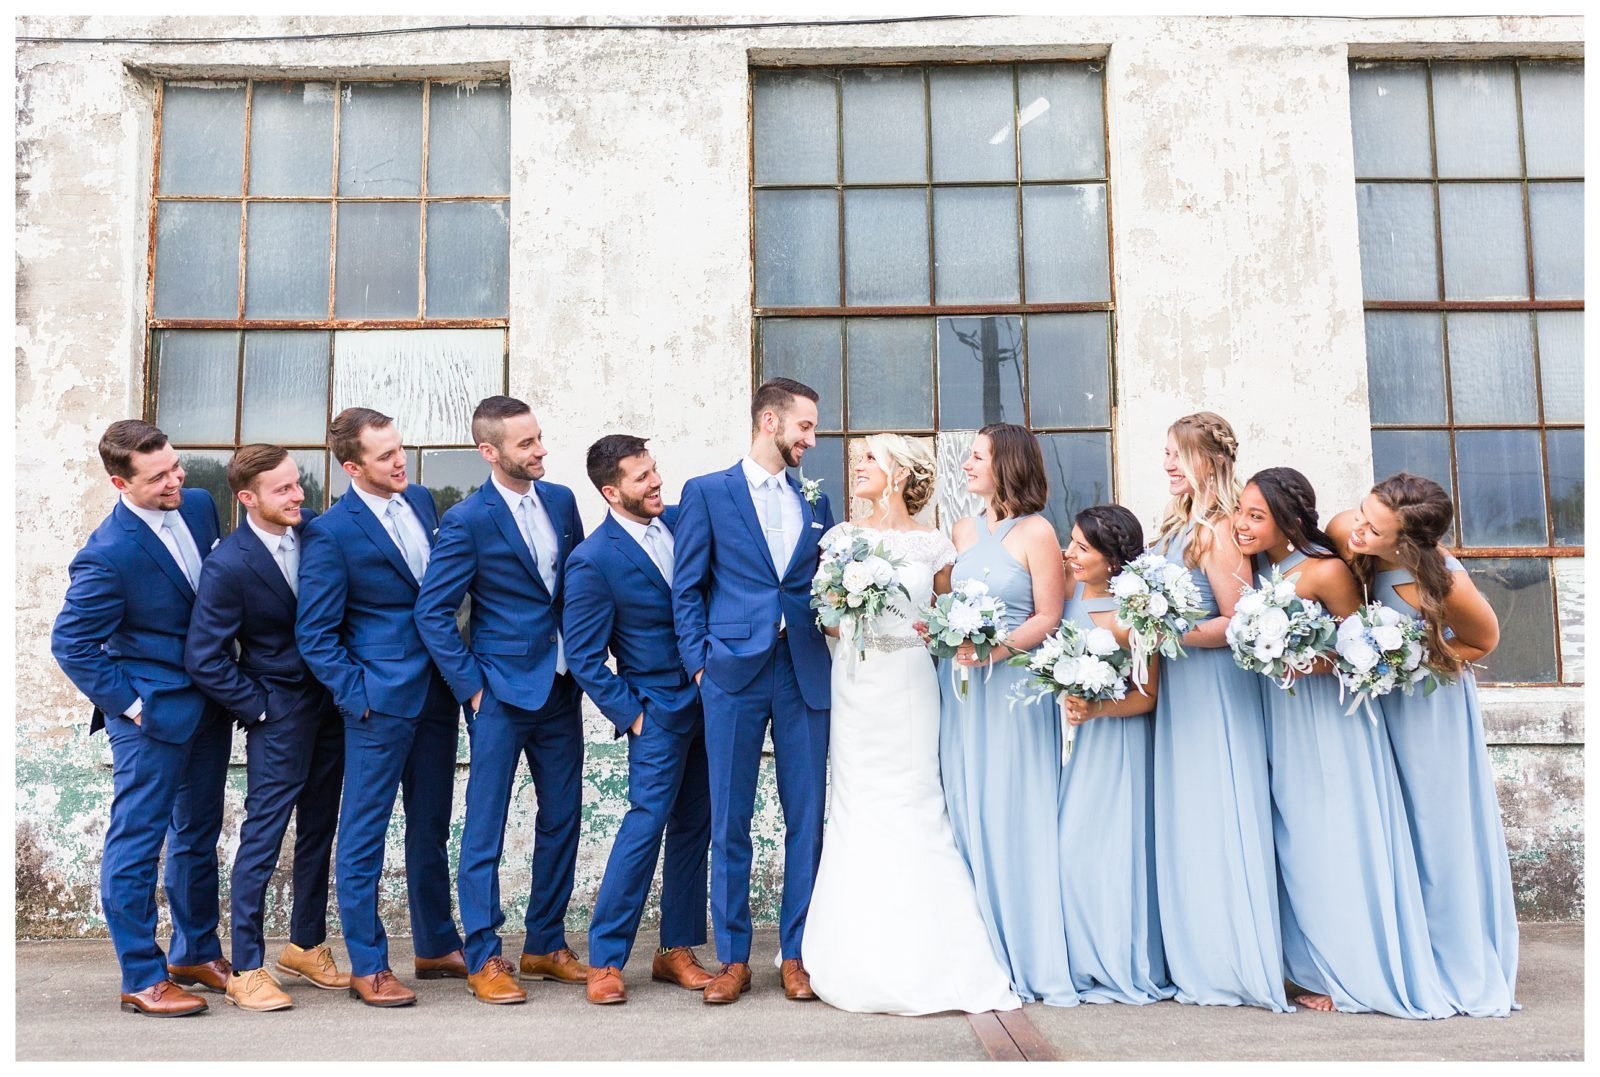 Цвет свадьбы фото. Свадьба в синих тонах. Свадьба в сине голубых тонах. Свадьба в синих оттенках. Свадьба в синем цвете гости.